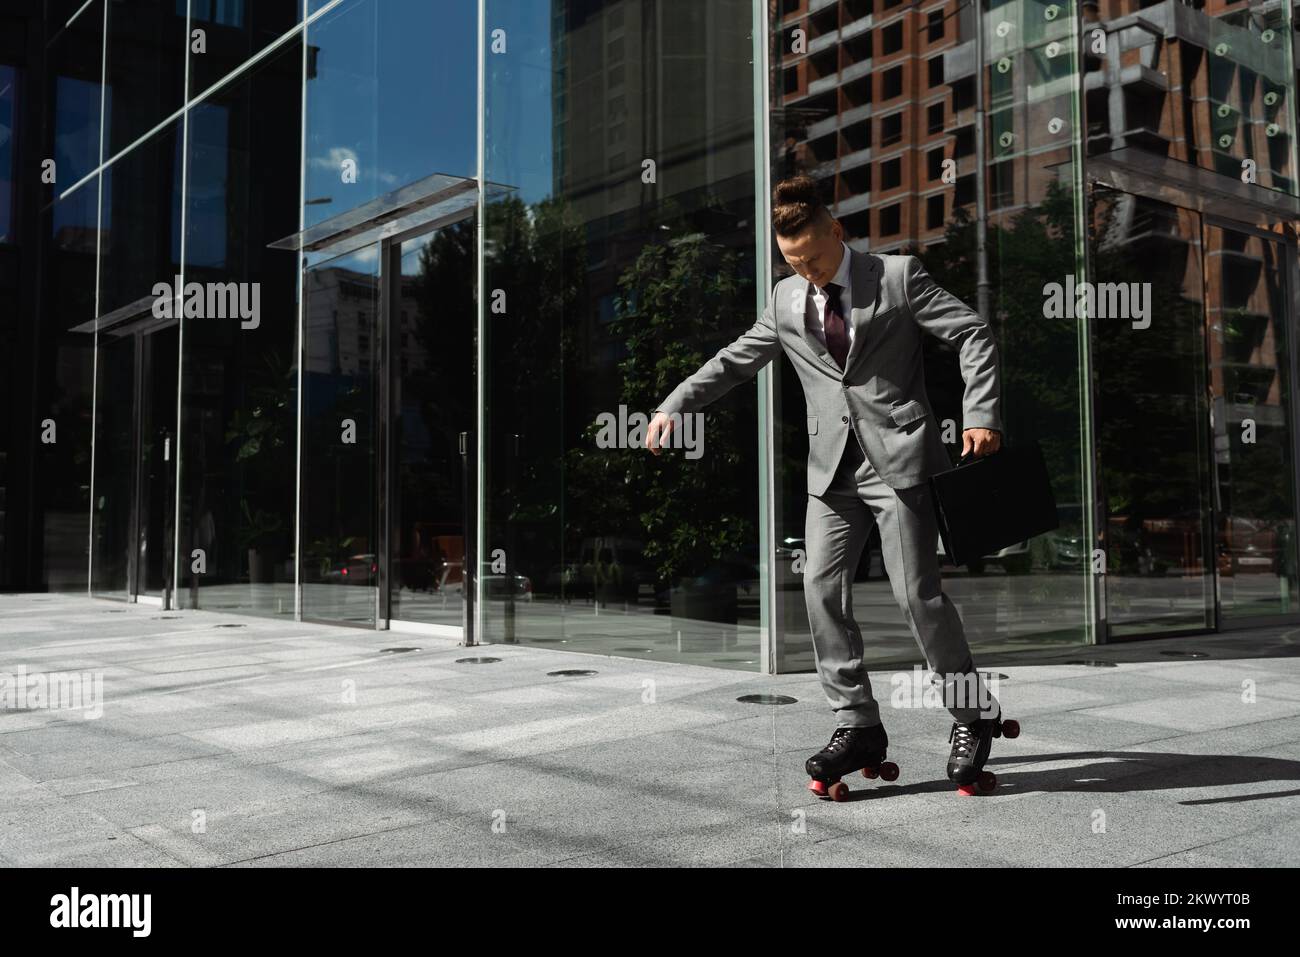 Langer junger Geschäftsmann im grauen Anzug, Rollschuhlaufen in der Nähe eines modernen Gebäudes mit Glasfassade, Stockbild Stockfoto